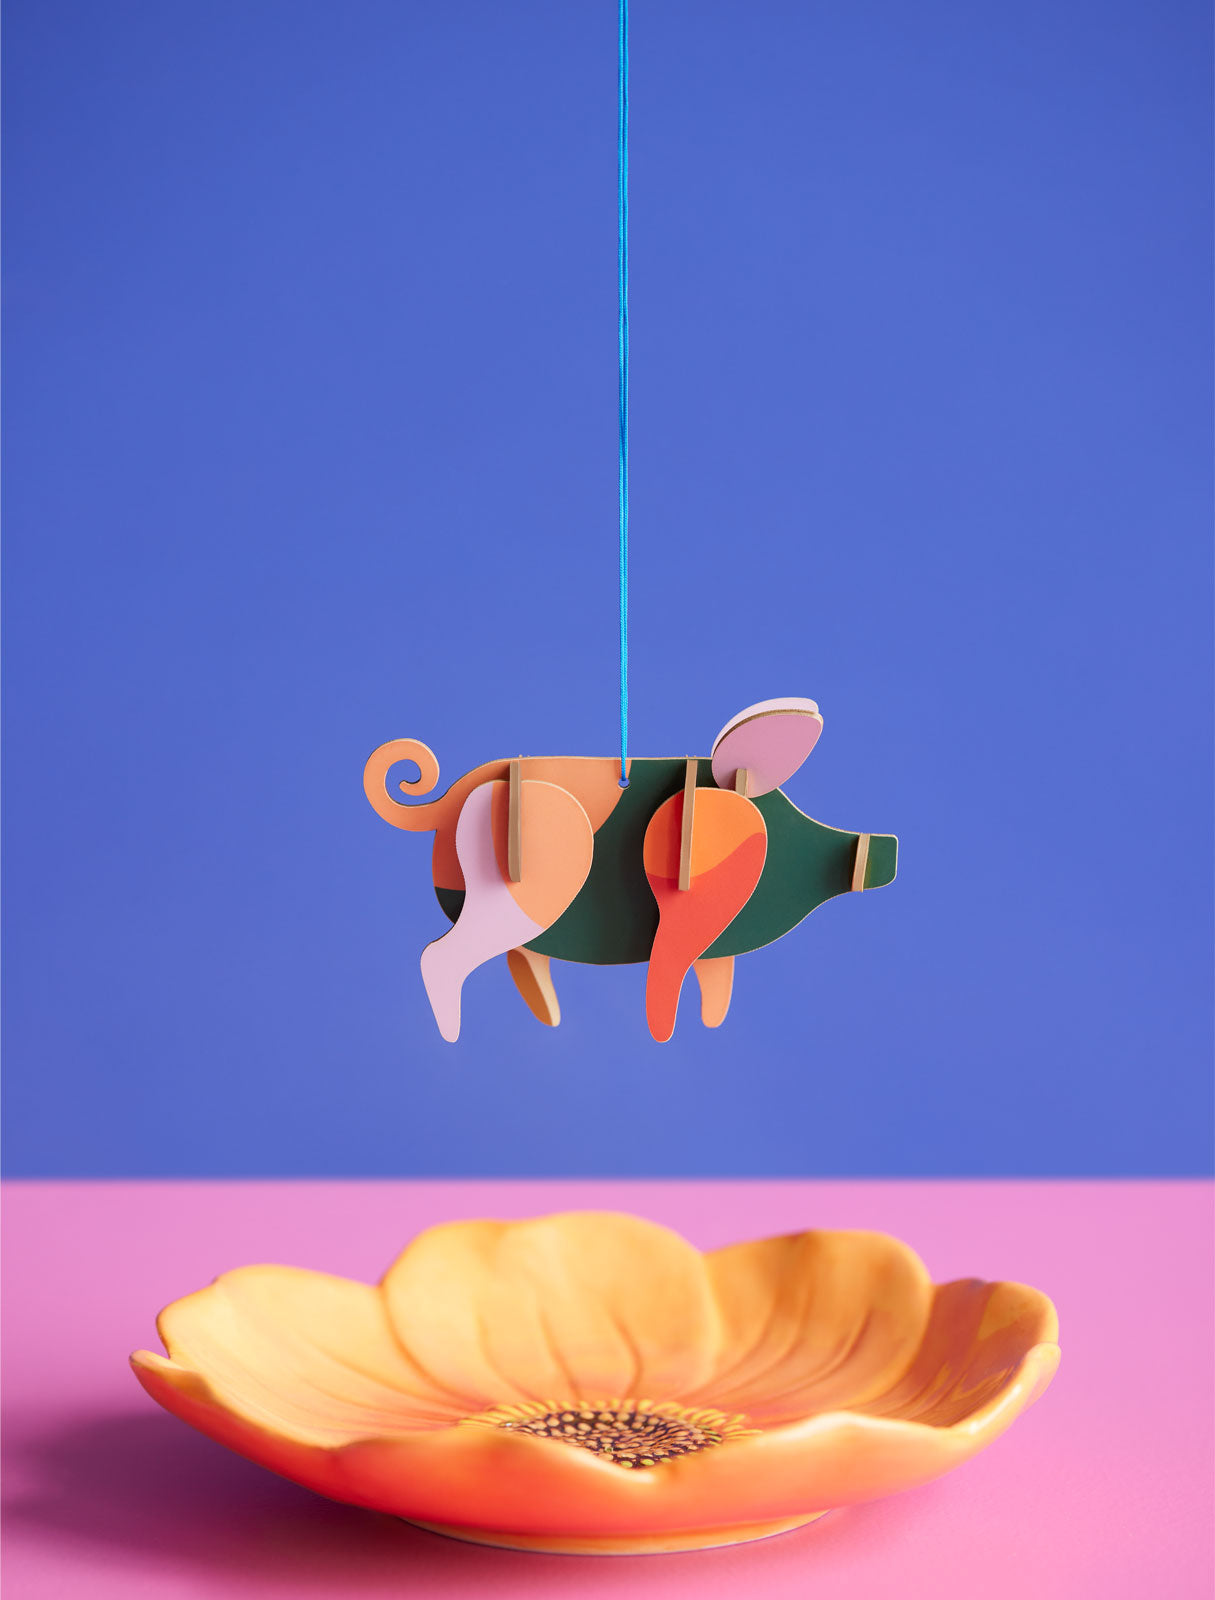 3D Pig Lucky Charm